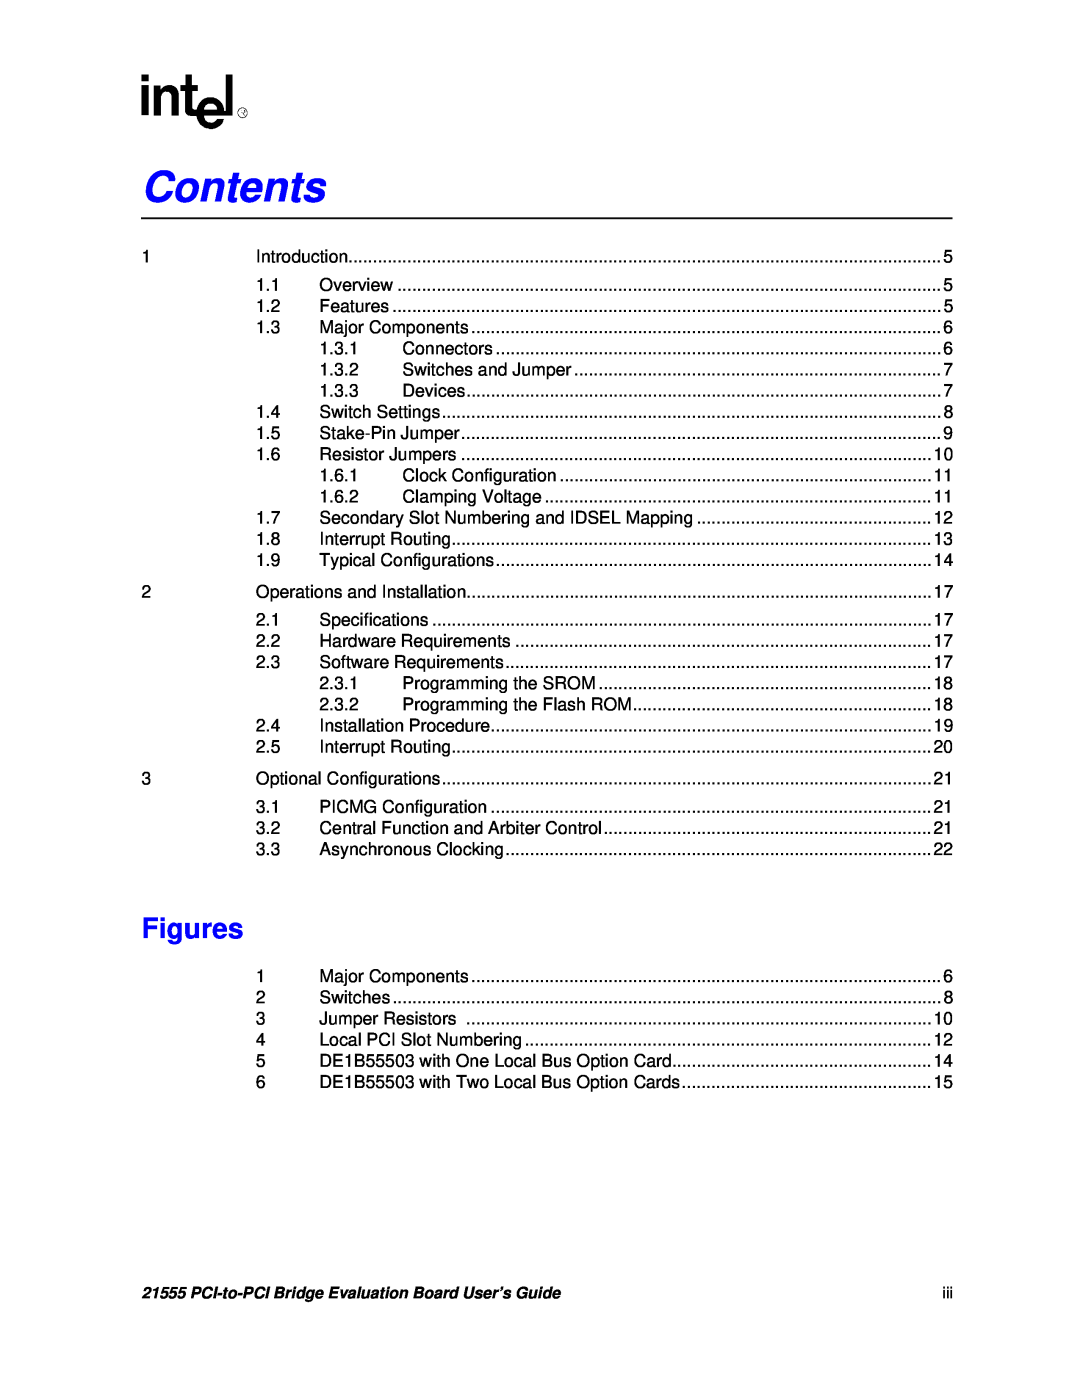 Intel 21555 manual Contents, Figures 